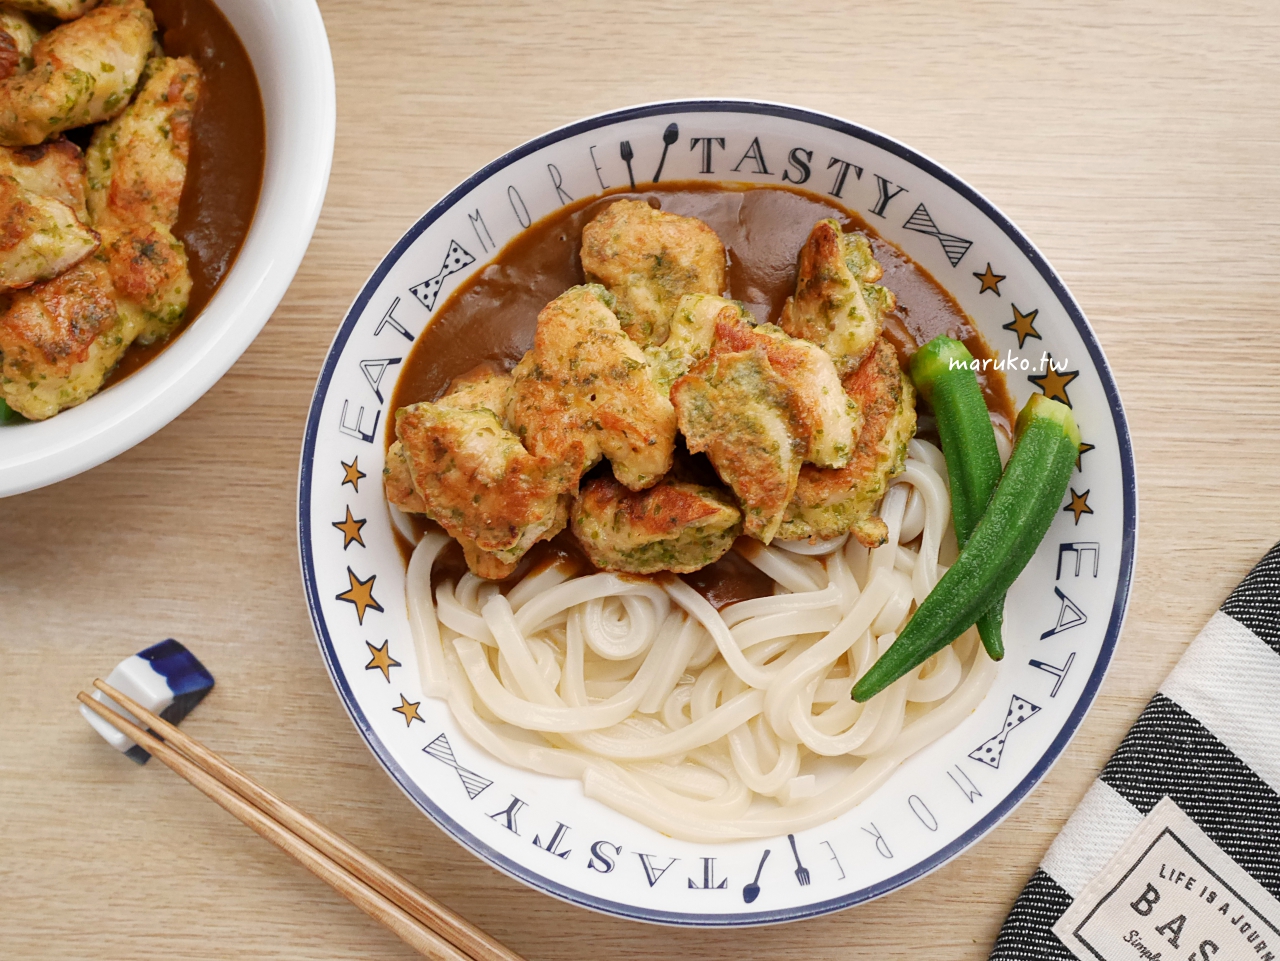 【雞肉食譜】15種亞洲風味炸雞做法，韓式炸雞、日式炸雞醬料這樣做！ @Maruko與美食有個約會